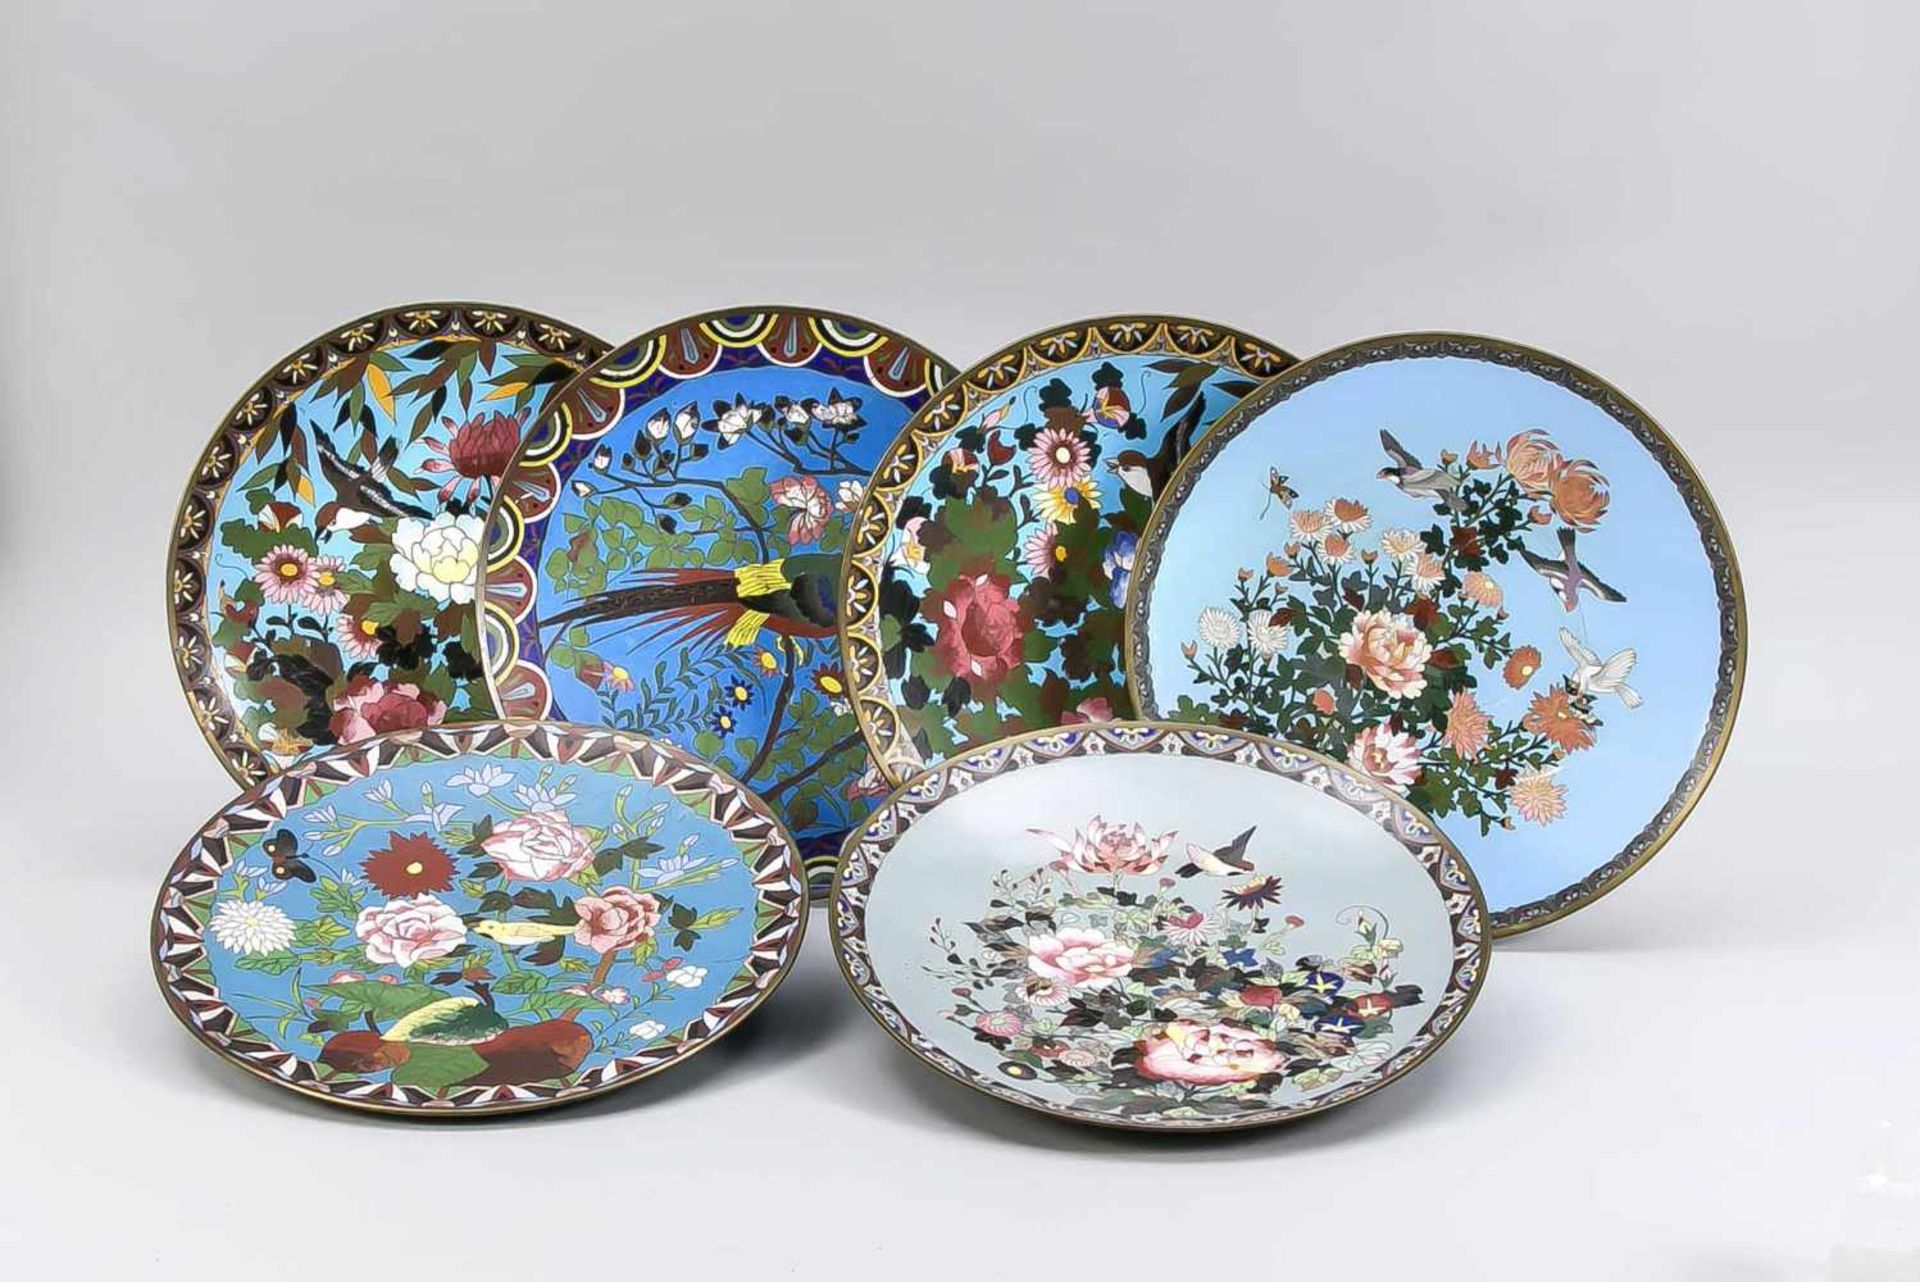 6 Cloisonné-Wandteller, Japan, Ende 19. Jh. (Meiji). Alle mit Vogel- und Blumendekor vorblauem